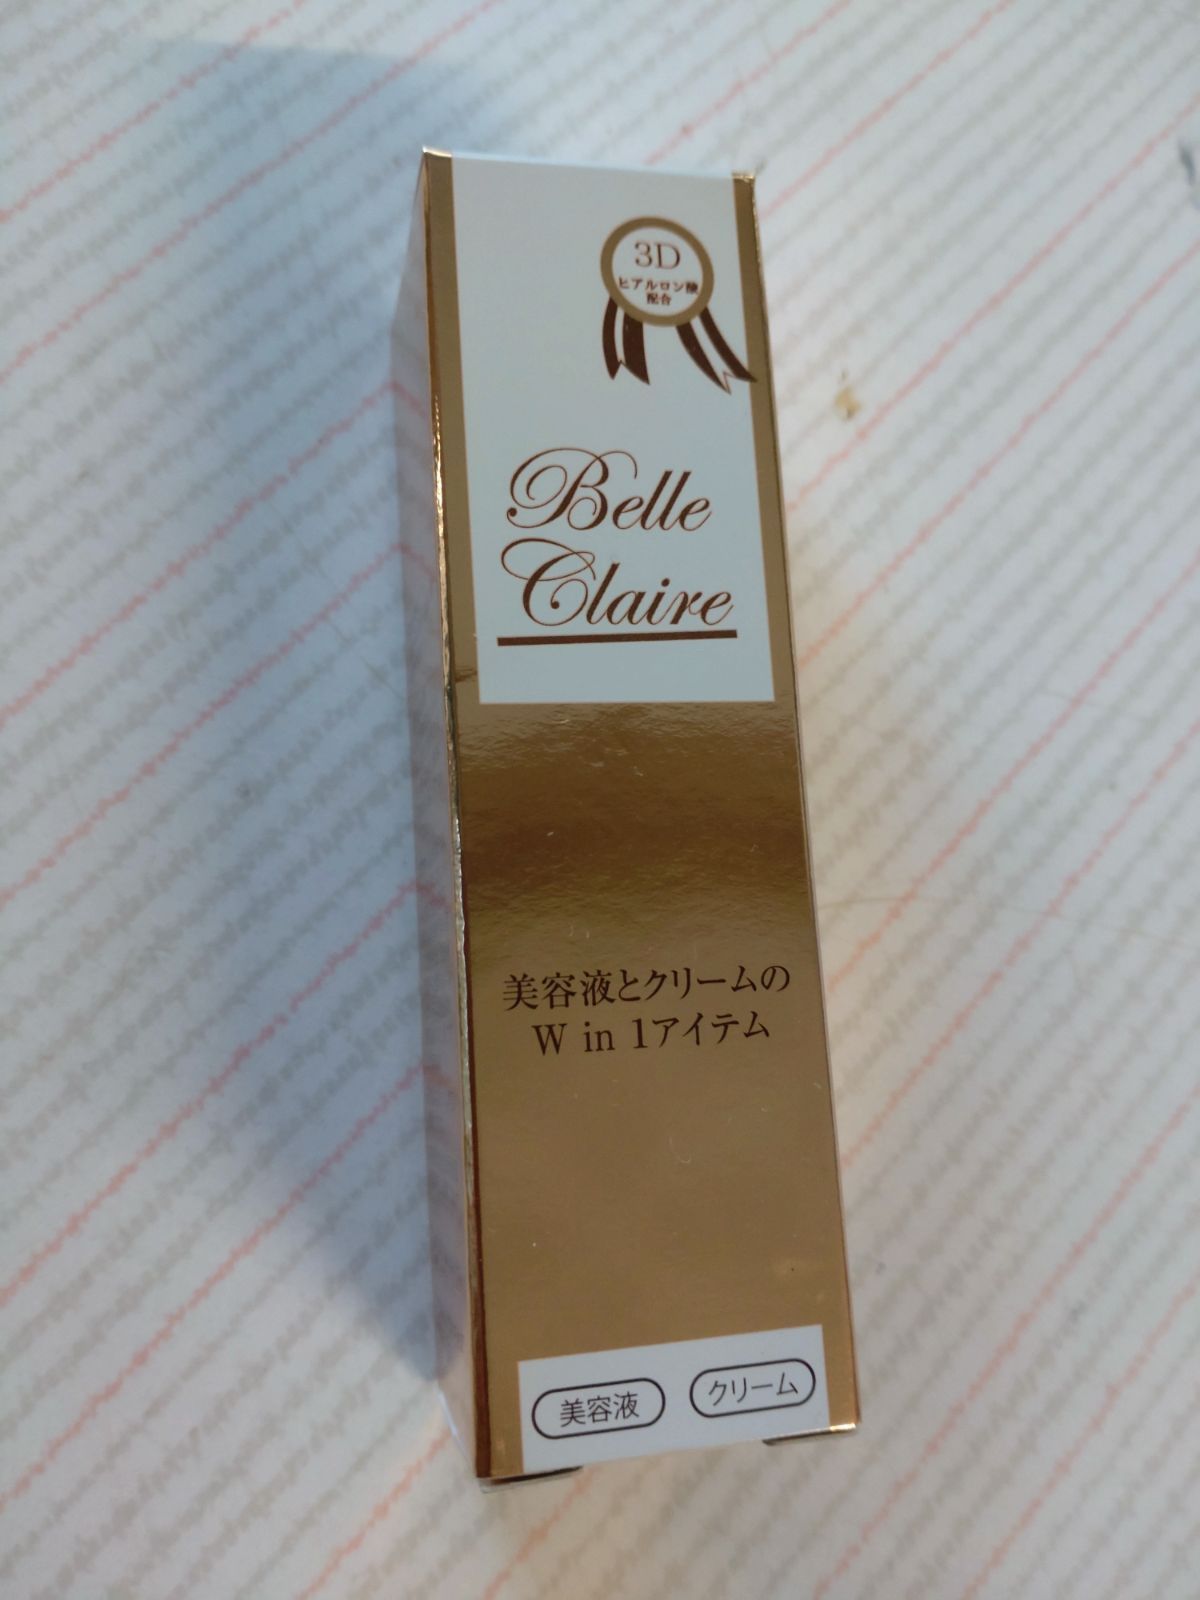 ベルクレール E&C 美容液 30mL 定価12000円 - スーちゃんハウス - メルカリ